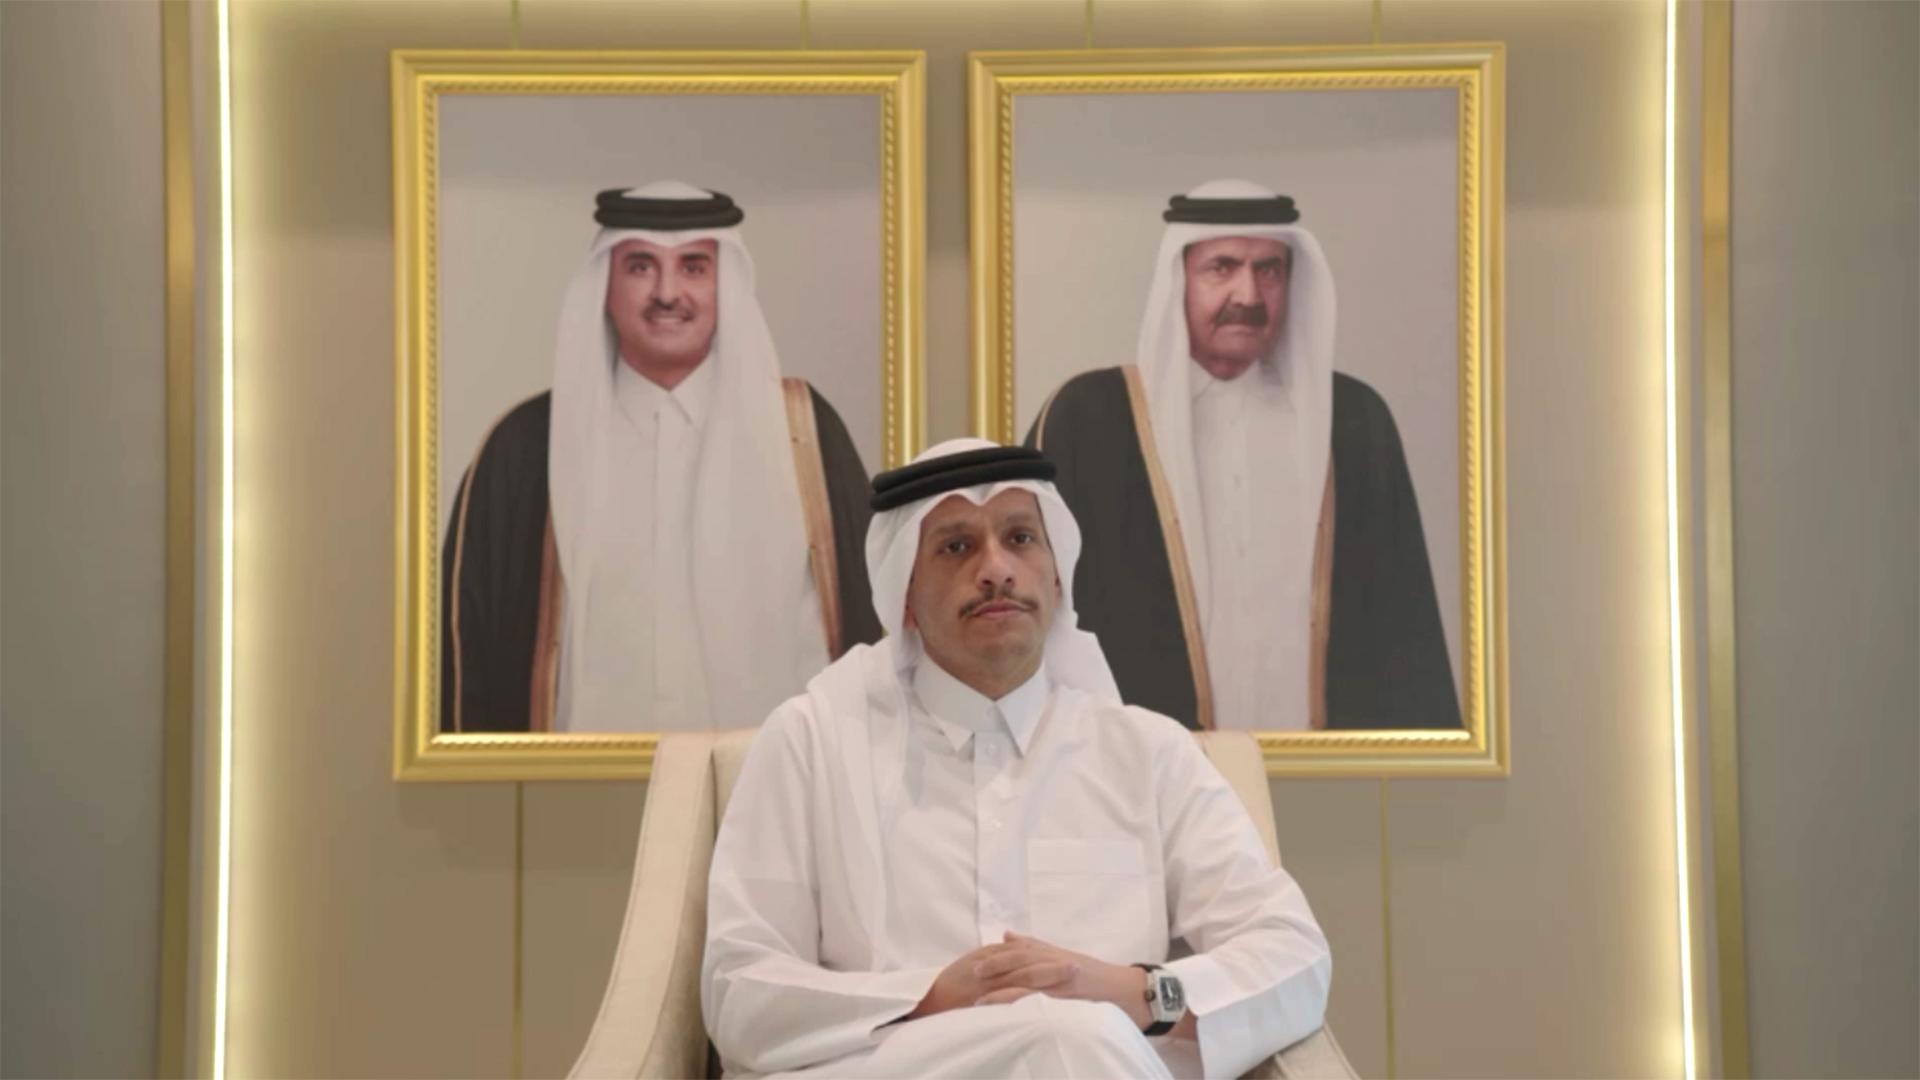 Mohammed bin Abdulrahman bin Jassim Al Thani | rbb/Kontraste